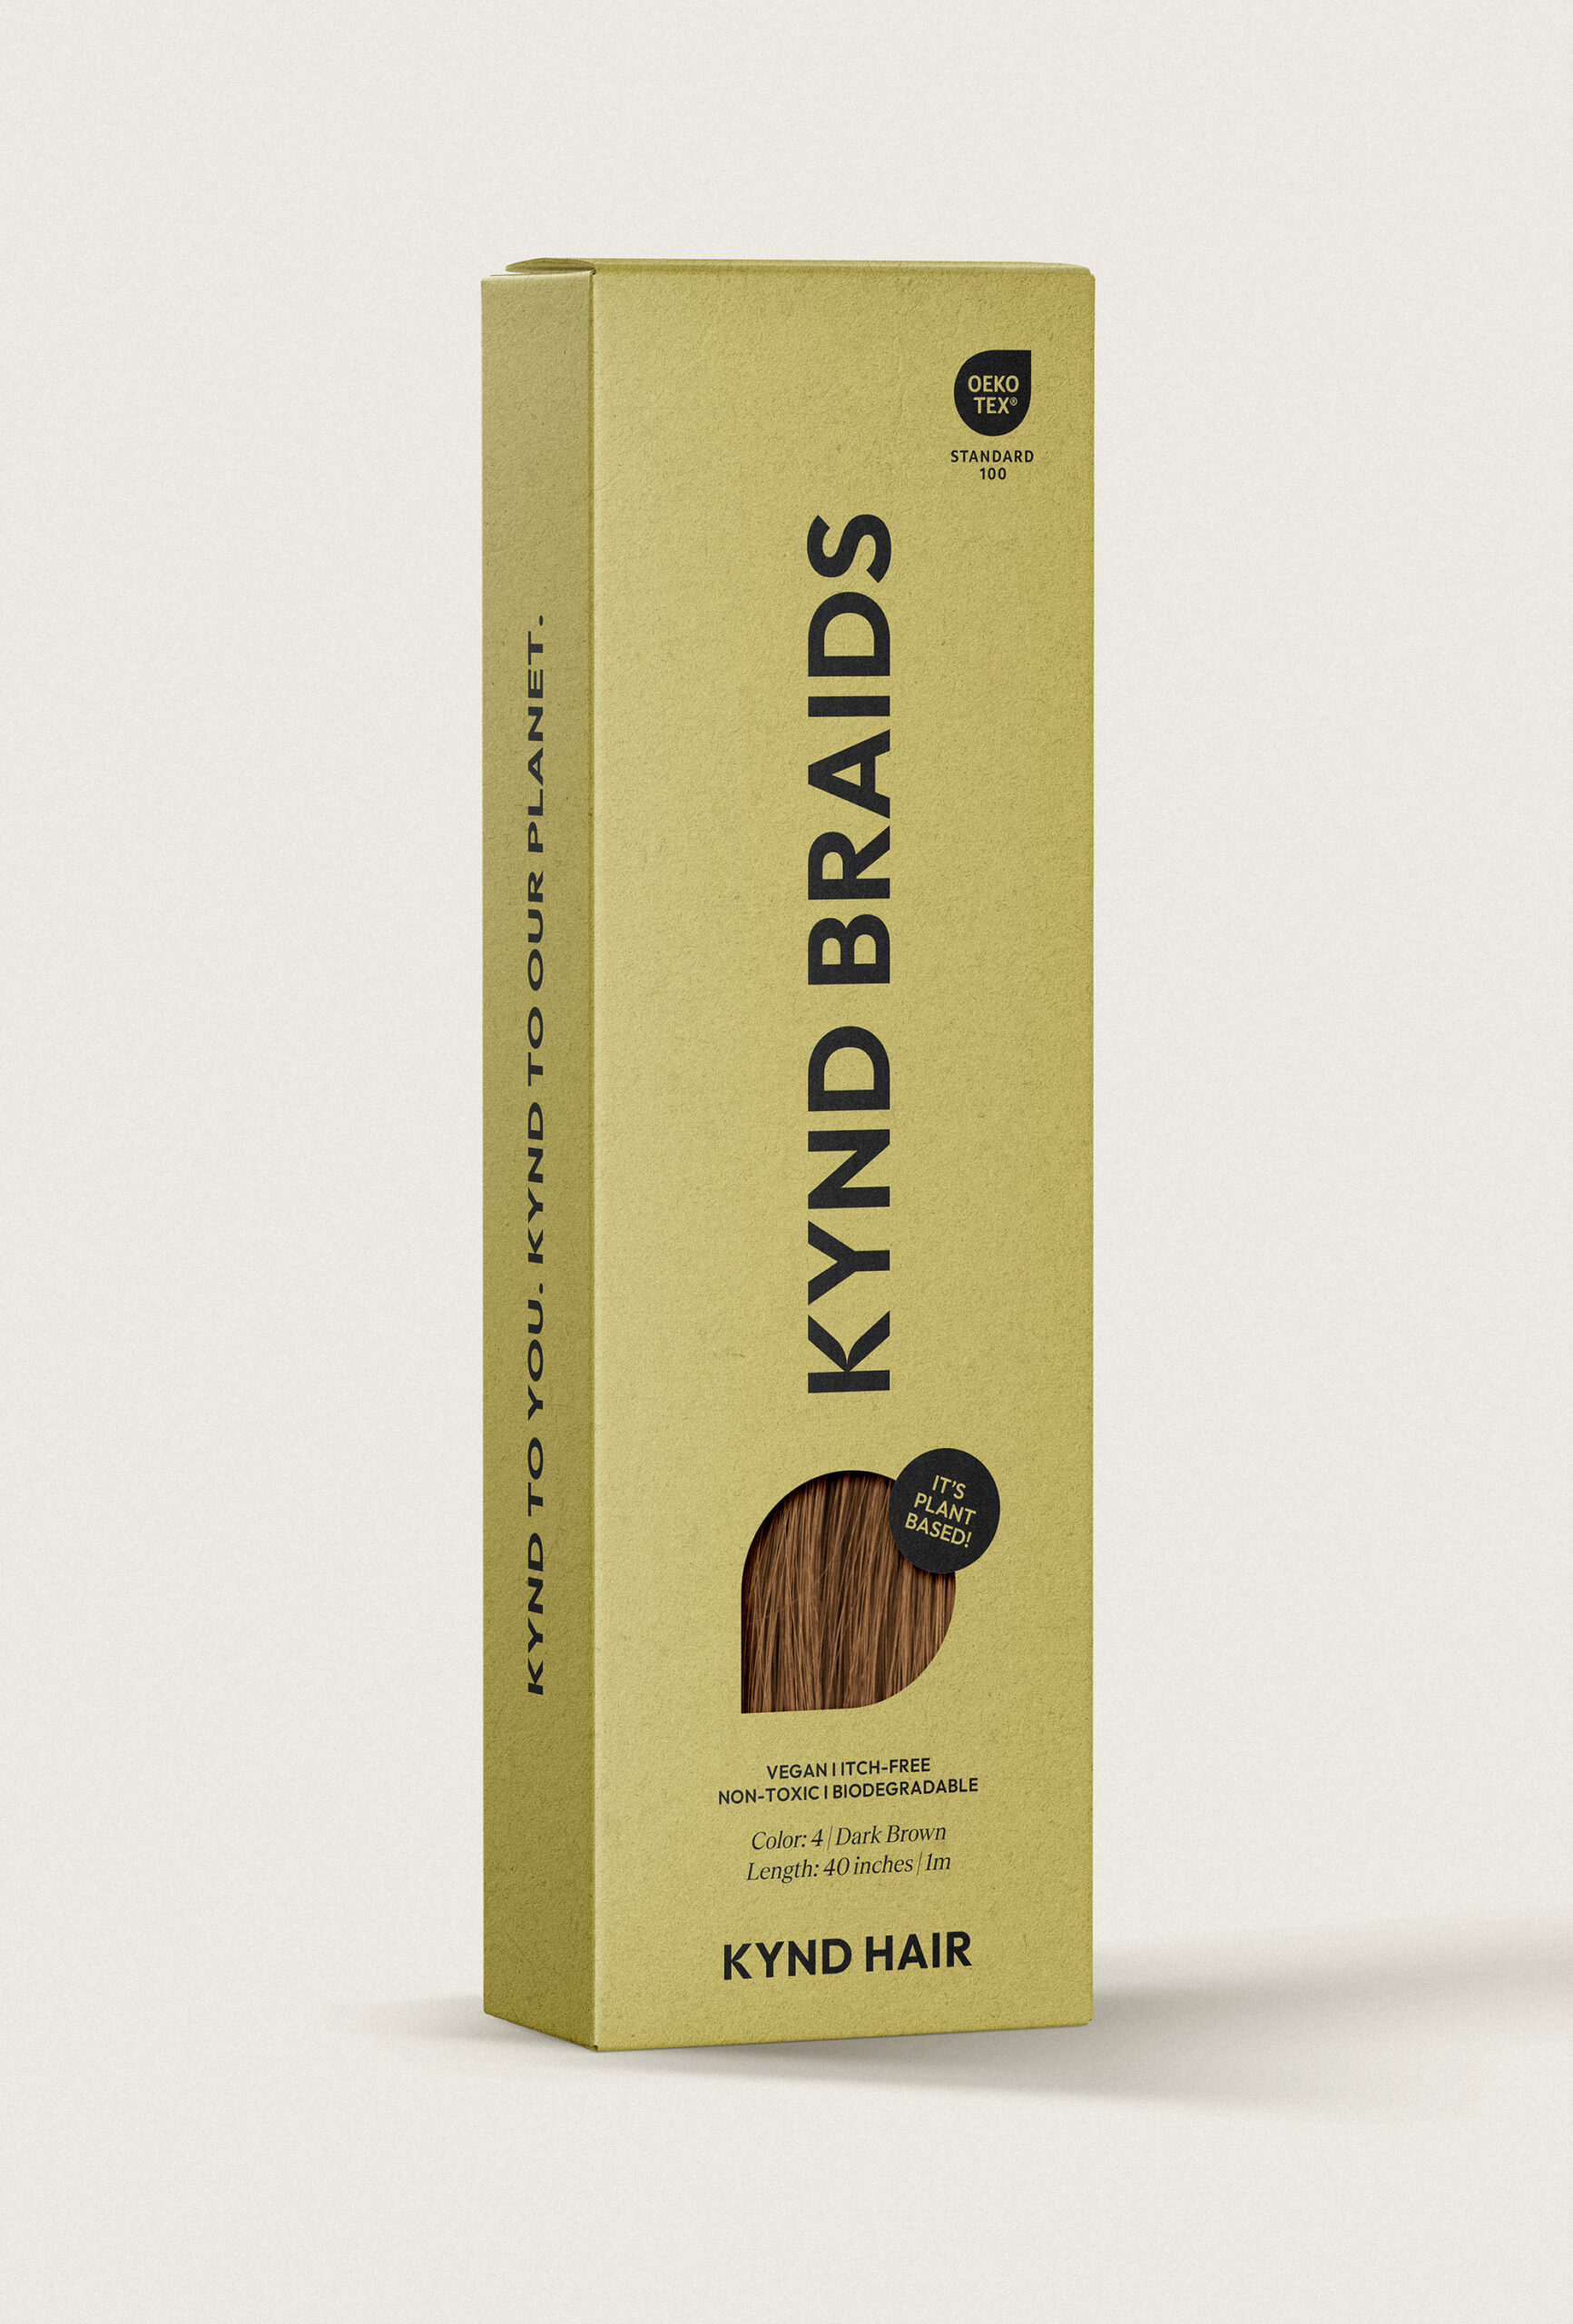 Kynd Hair branding & packaging